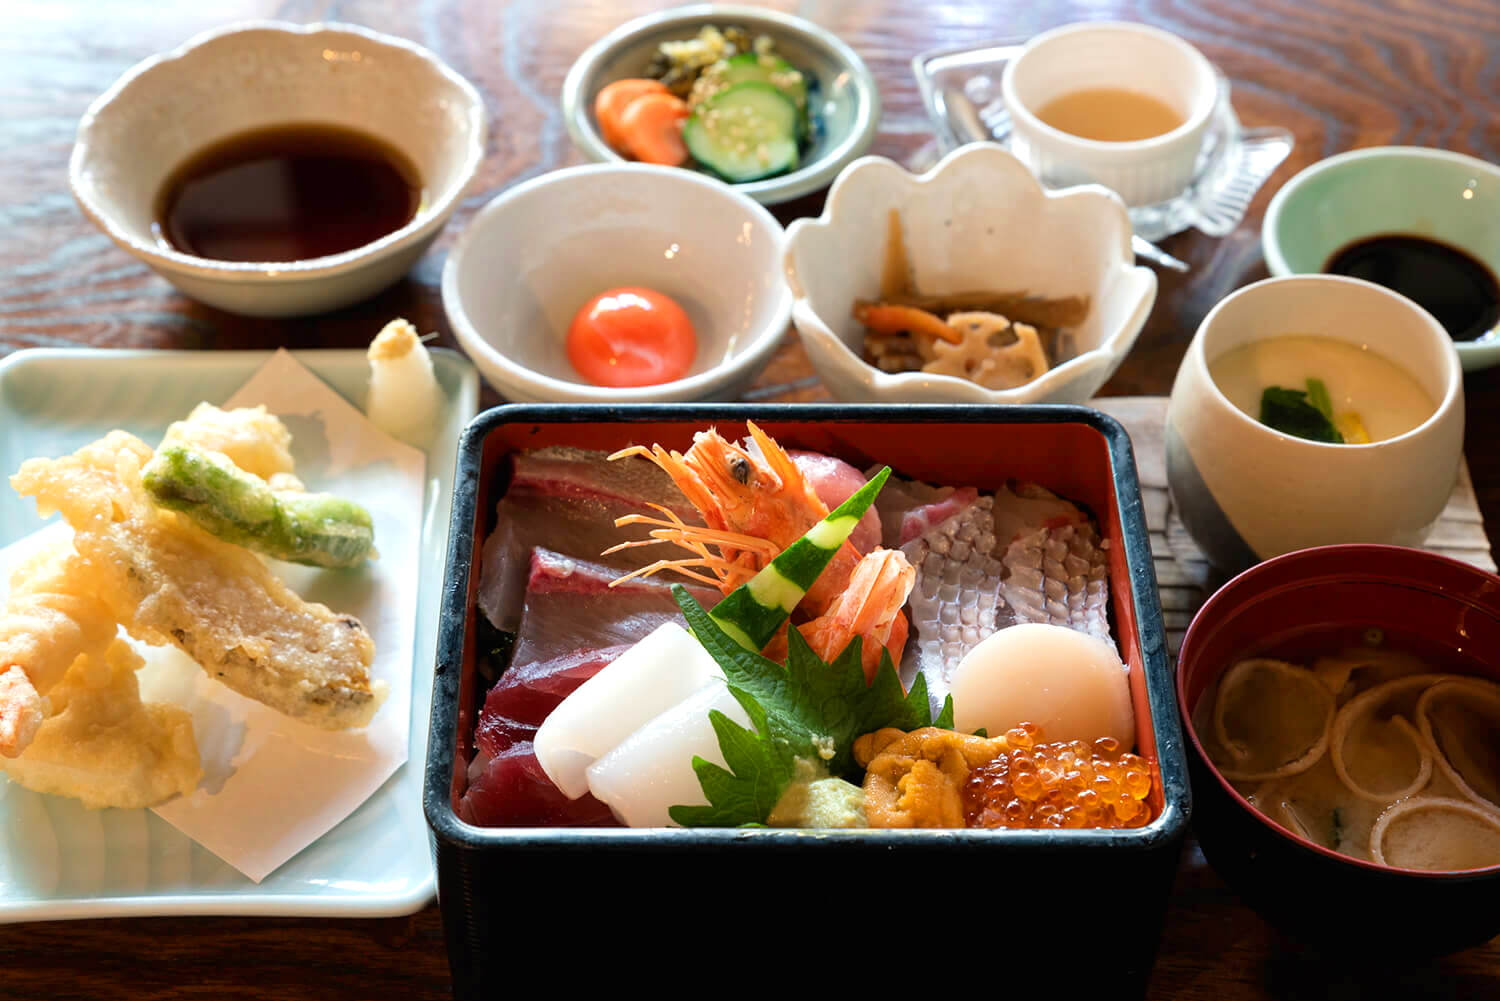 「海鮮重御膳」2,200円。海鮮重の他に、天ぷら、卵、茶碗蒸し、ぬか漬け、味噌汁、デザートがセット